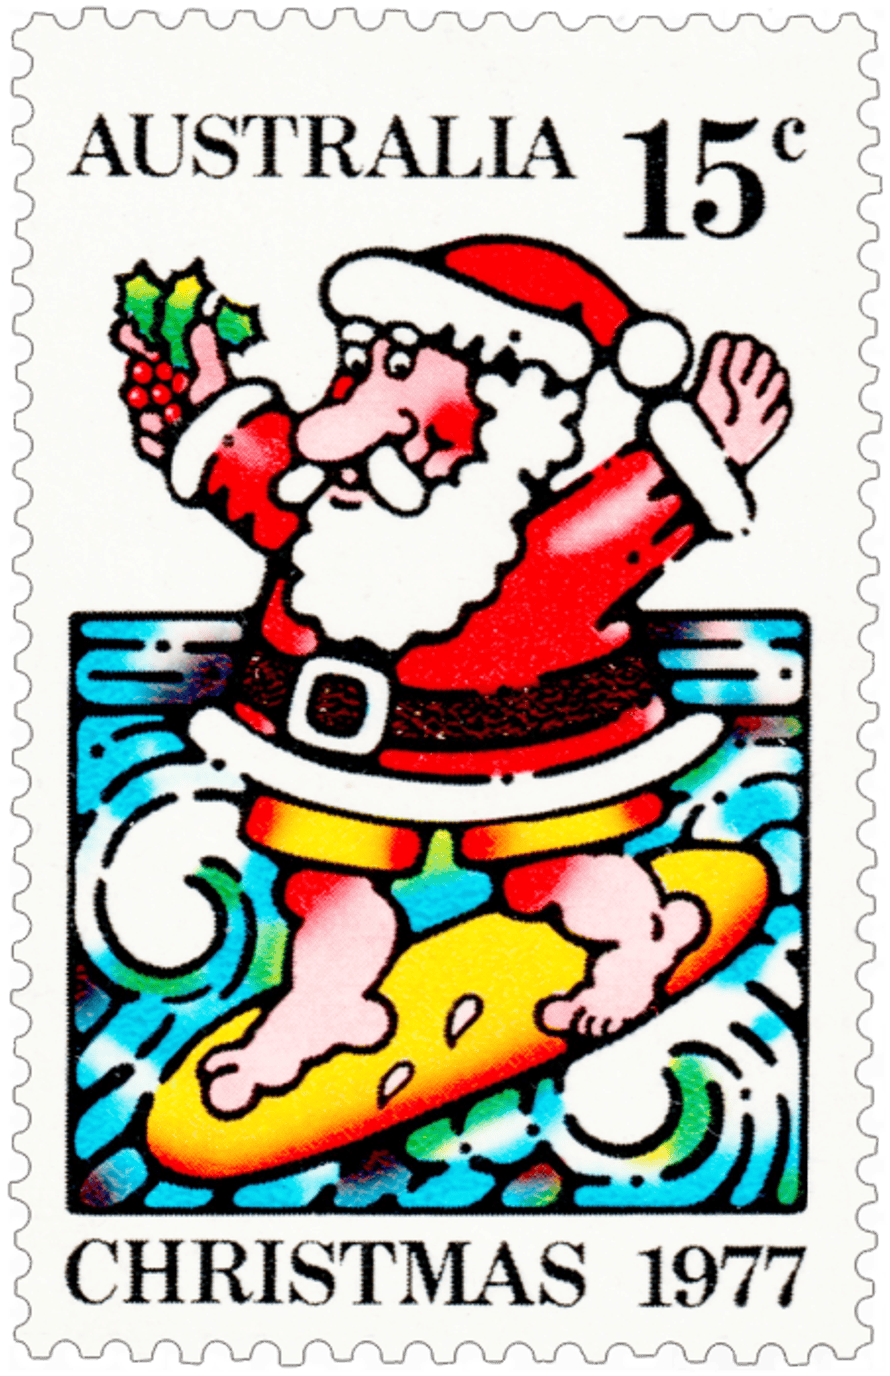 Noël 1977 - une marque de Père Noël surfeur